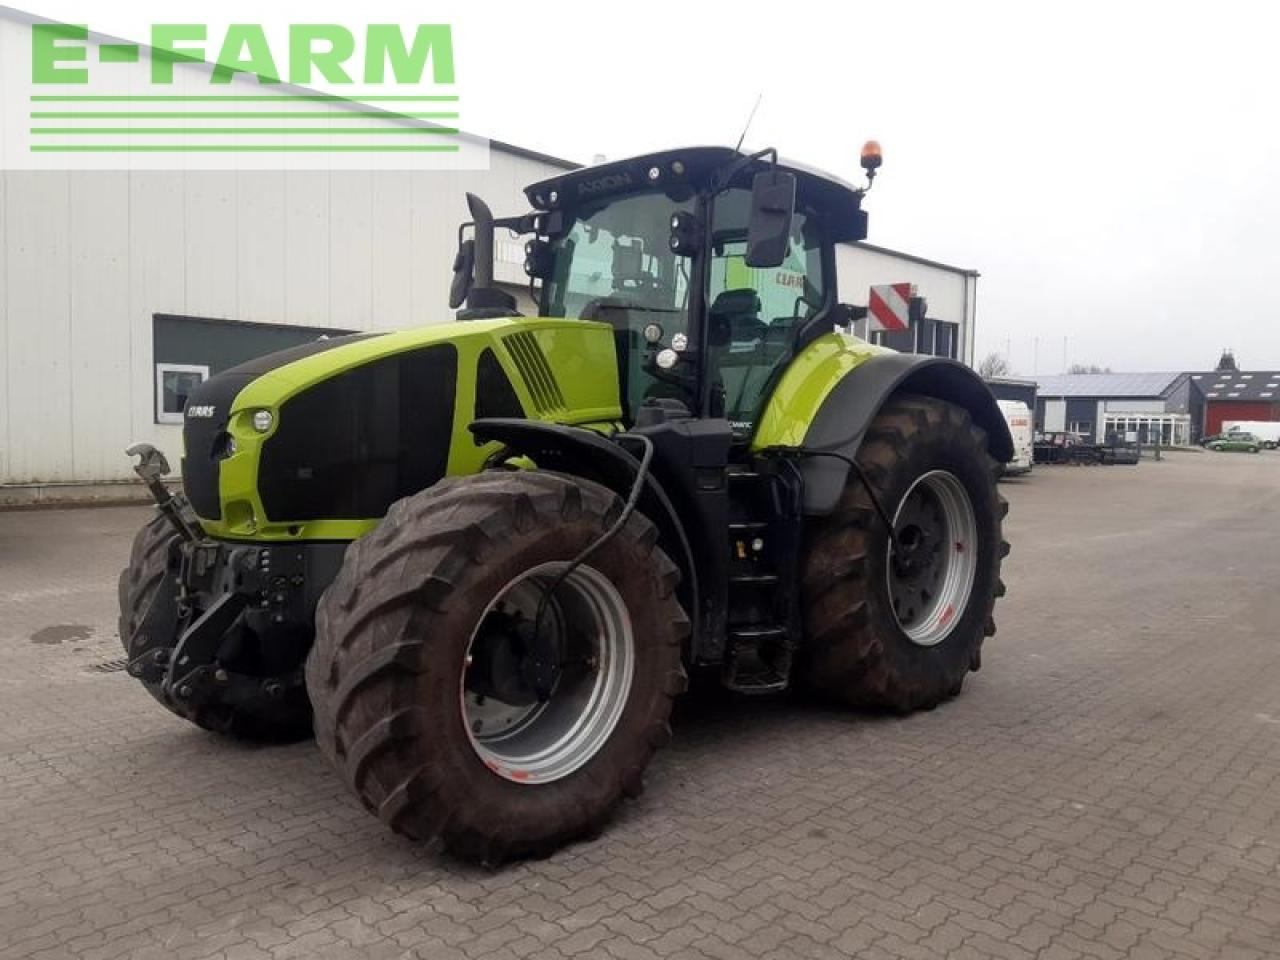 Farm tractor CLAAS axion 950 cmatic ctic